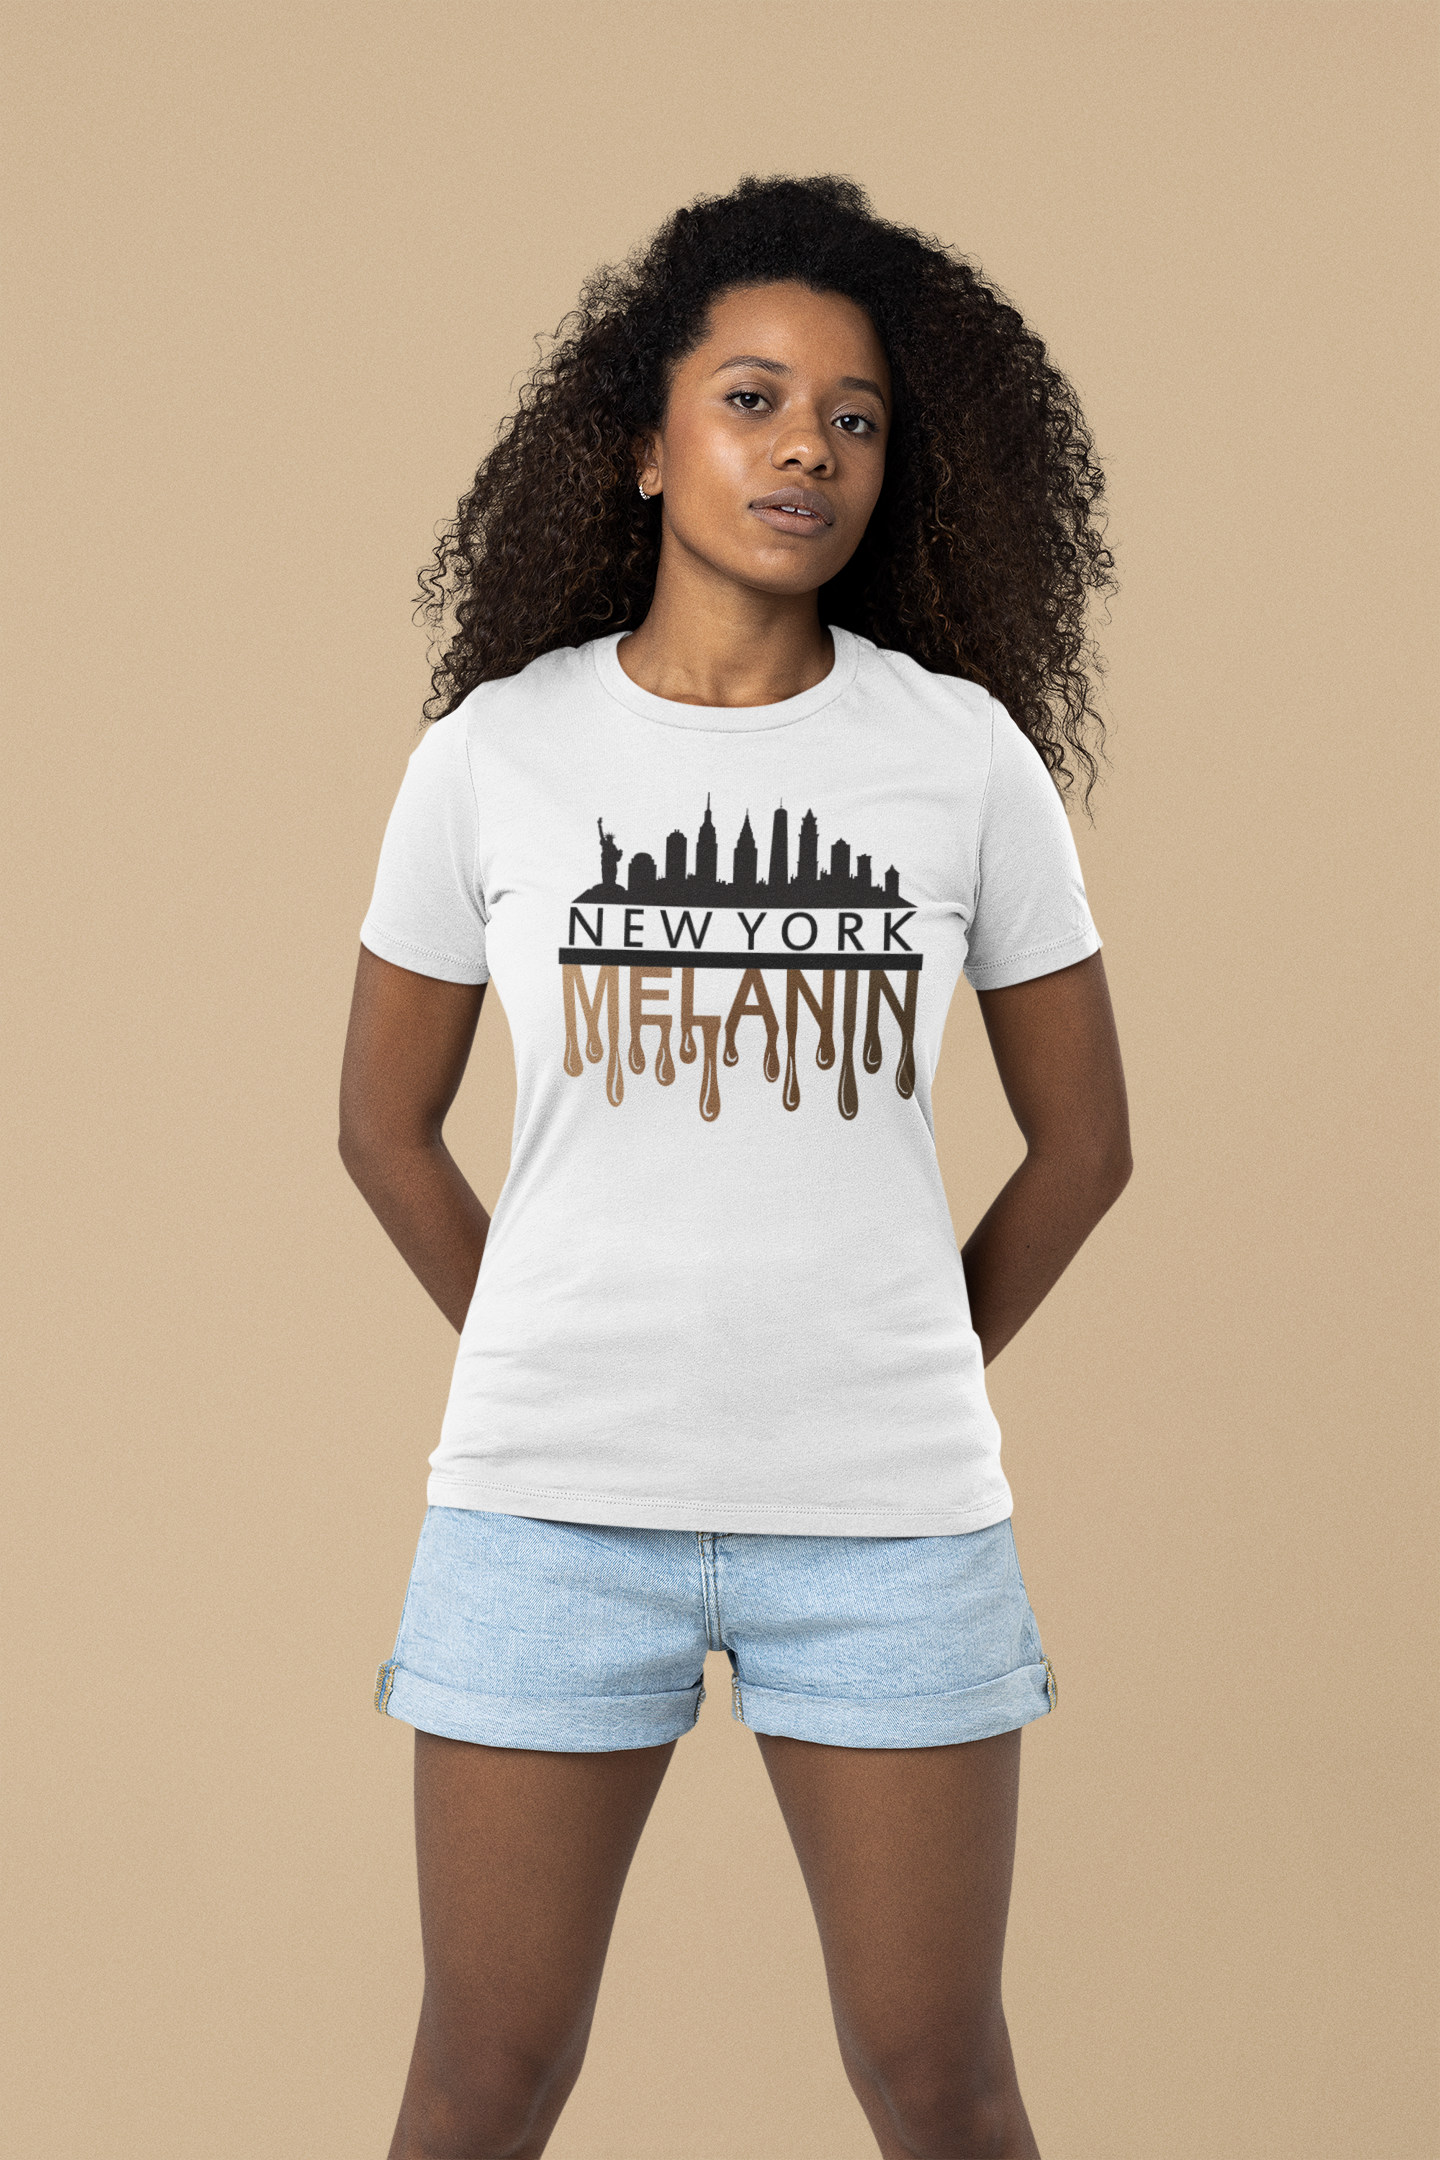 New York City Melanin T-Shirt